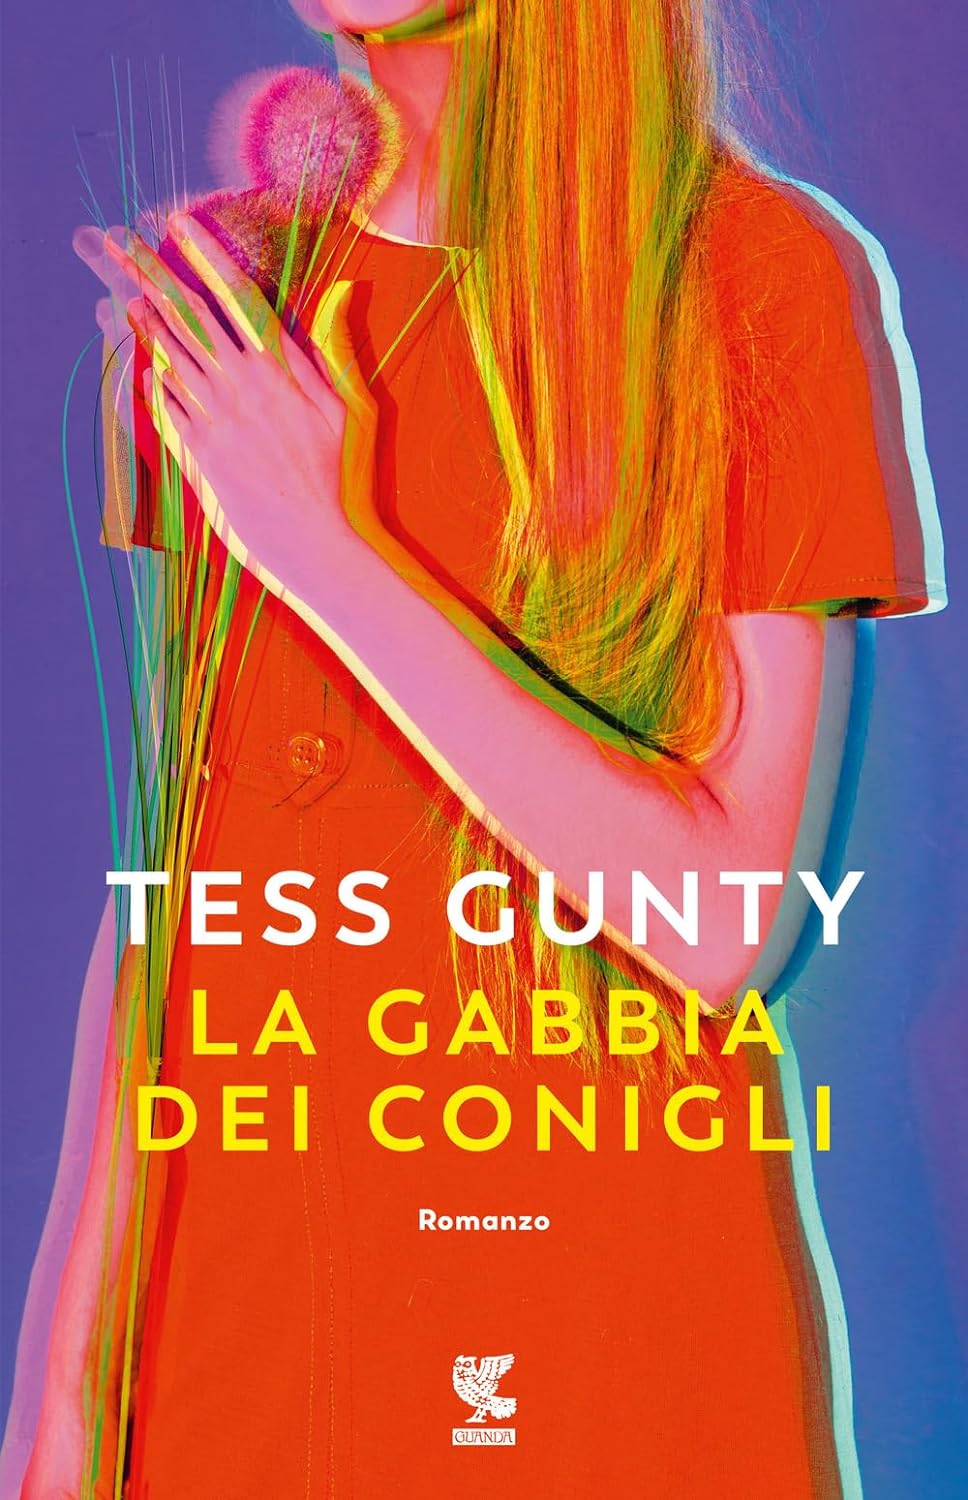 La Gabbia Dei Conigli di Tess Gunty – Recensione